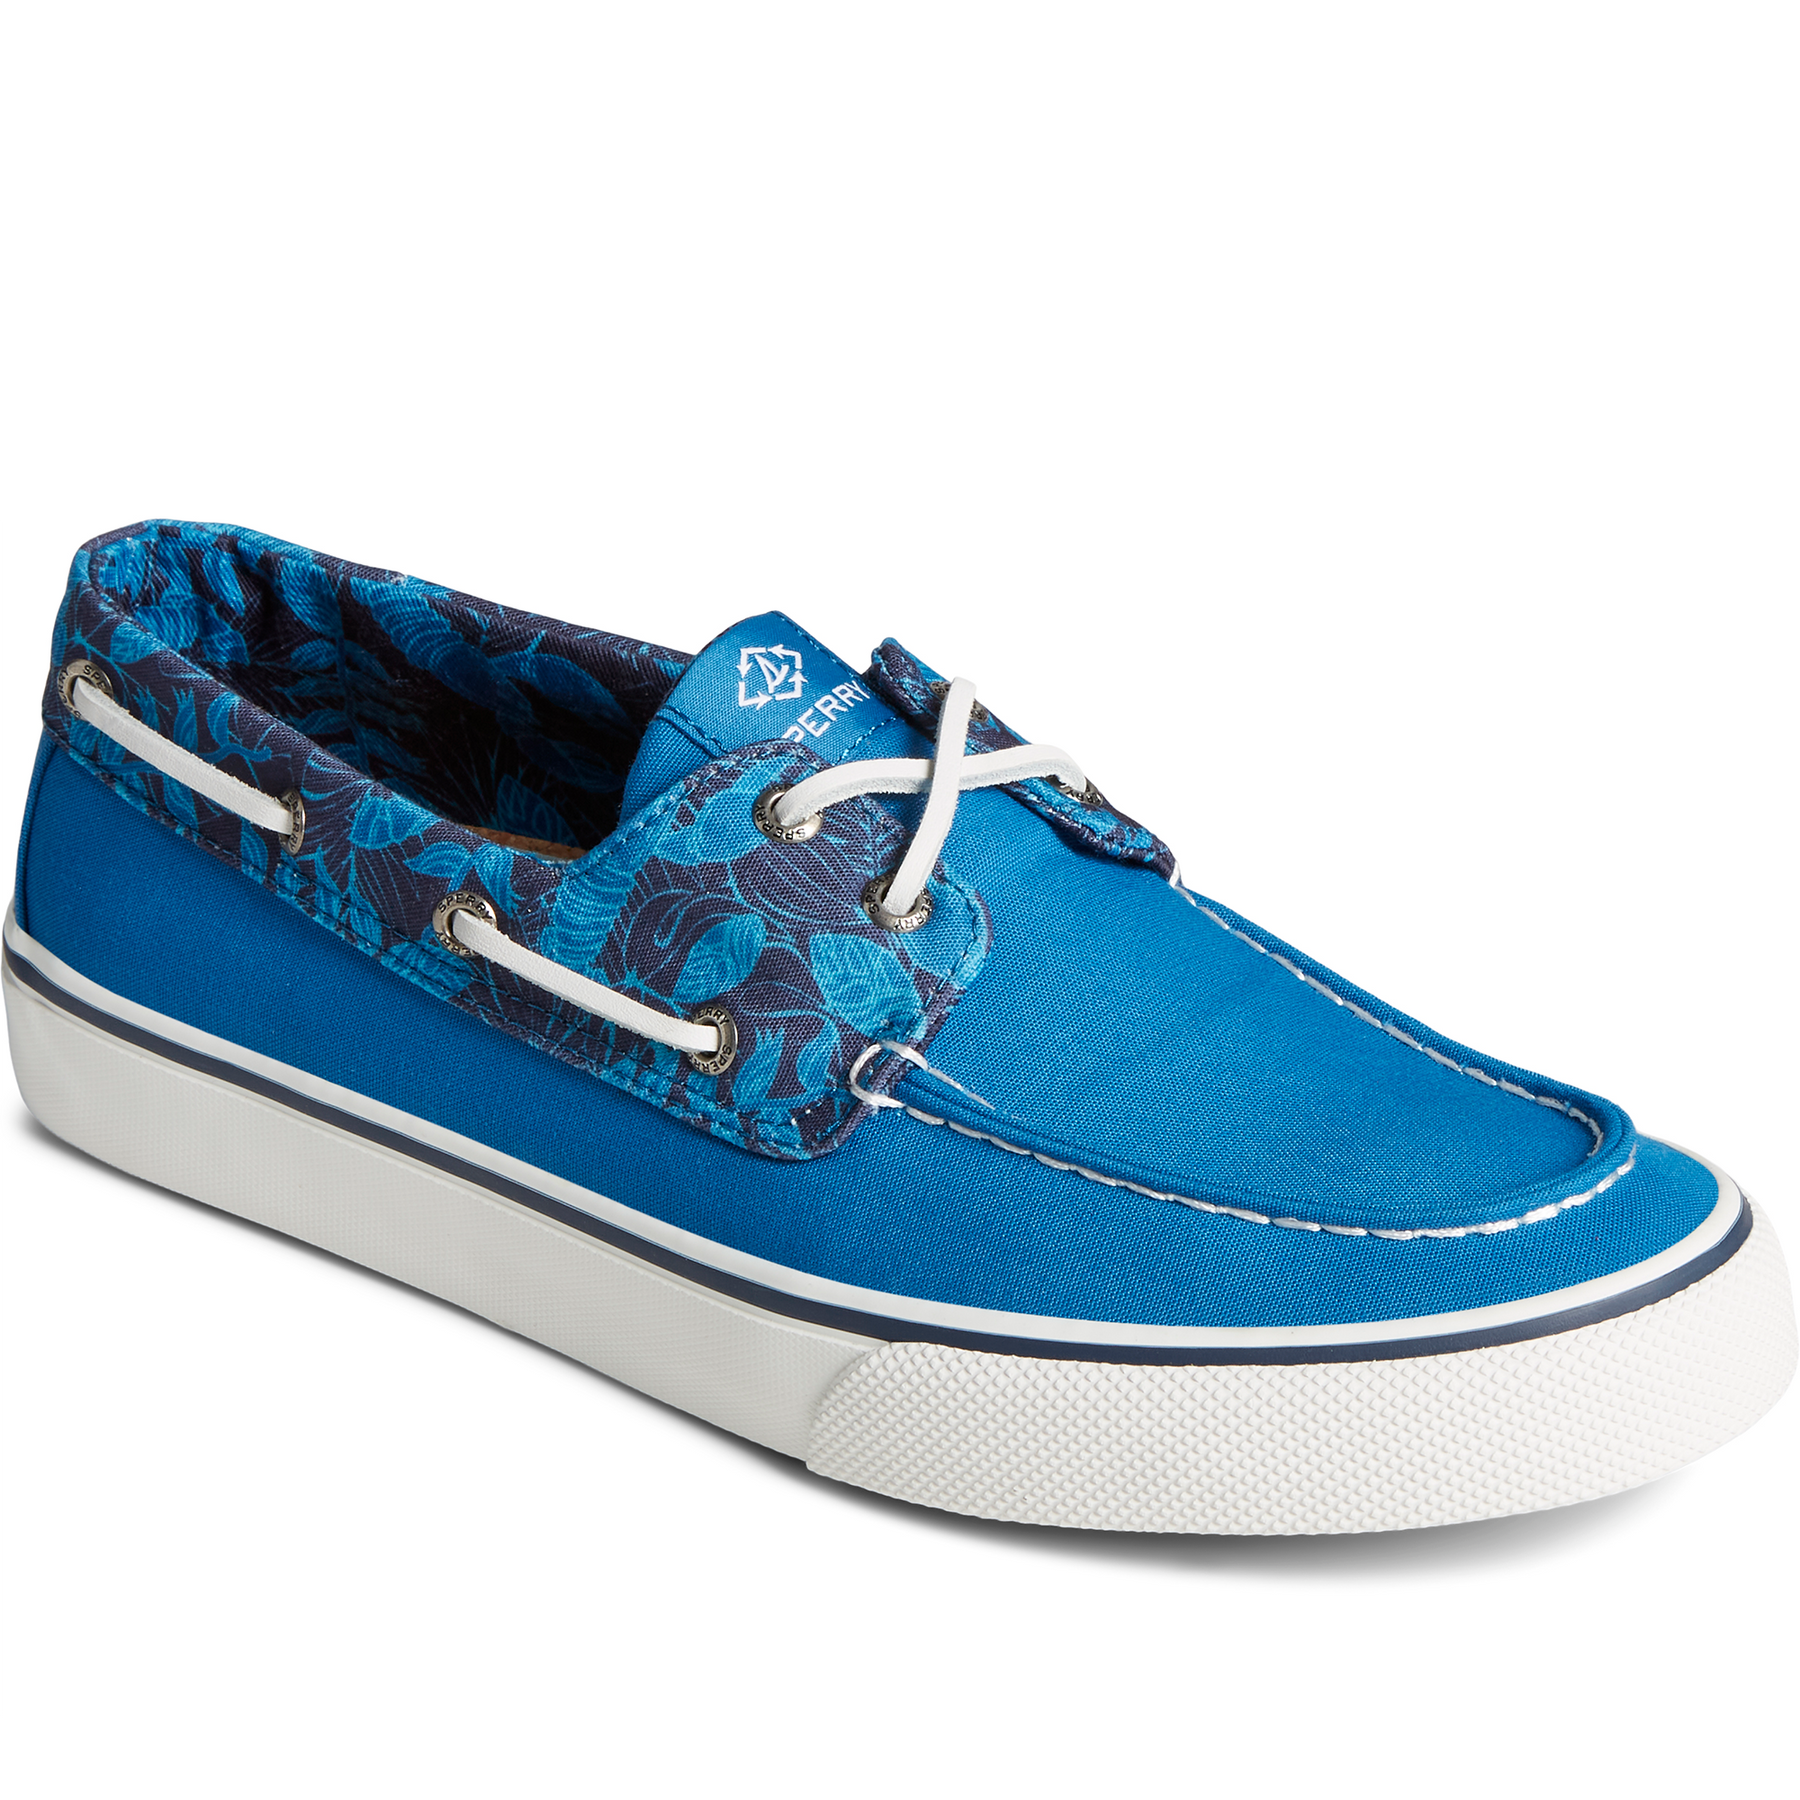 Men's Bahama II Resort Boat Sneaker - Blue (STS24818)